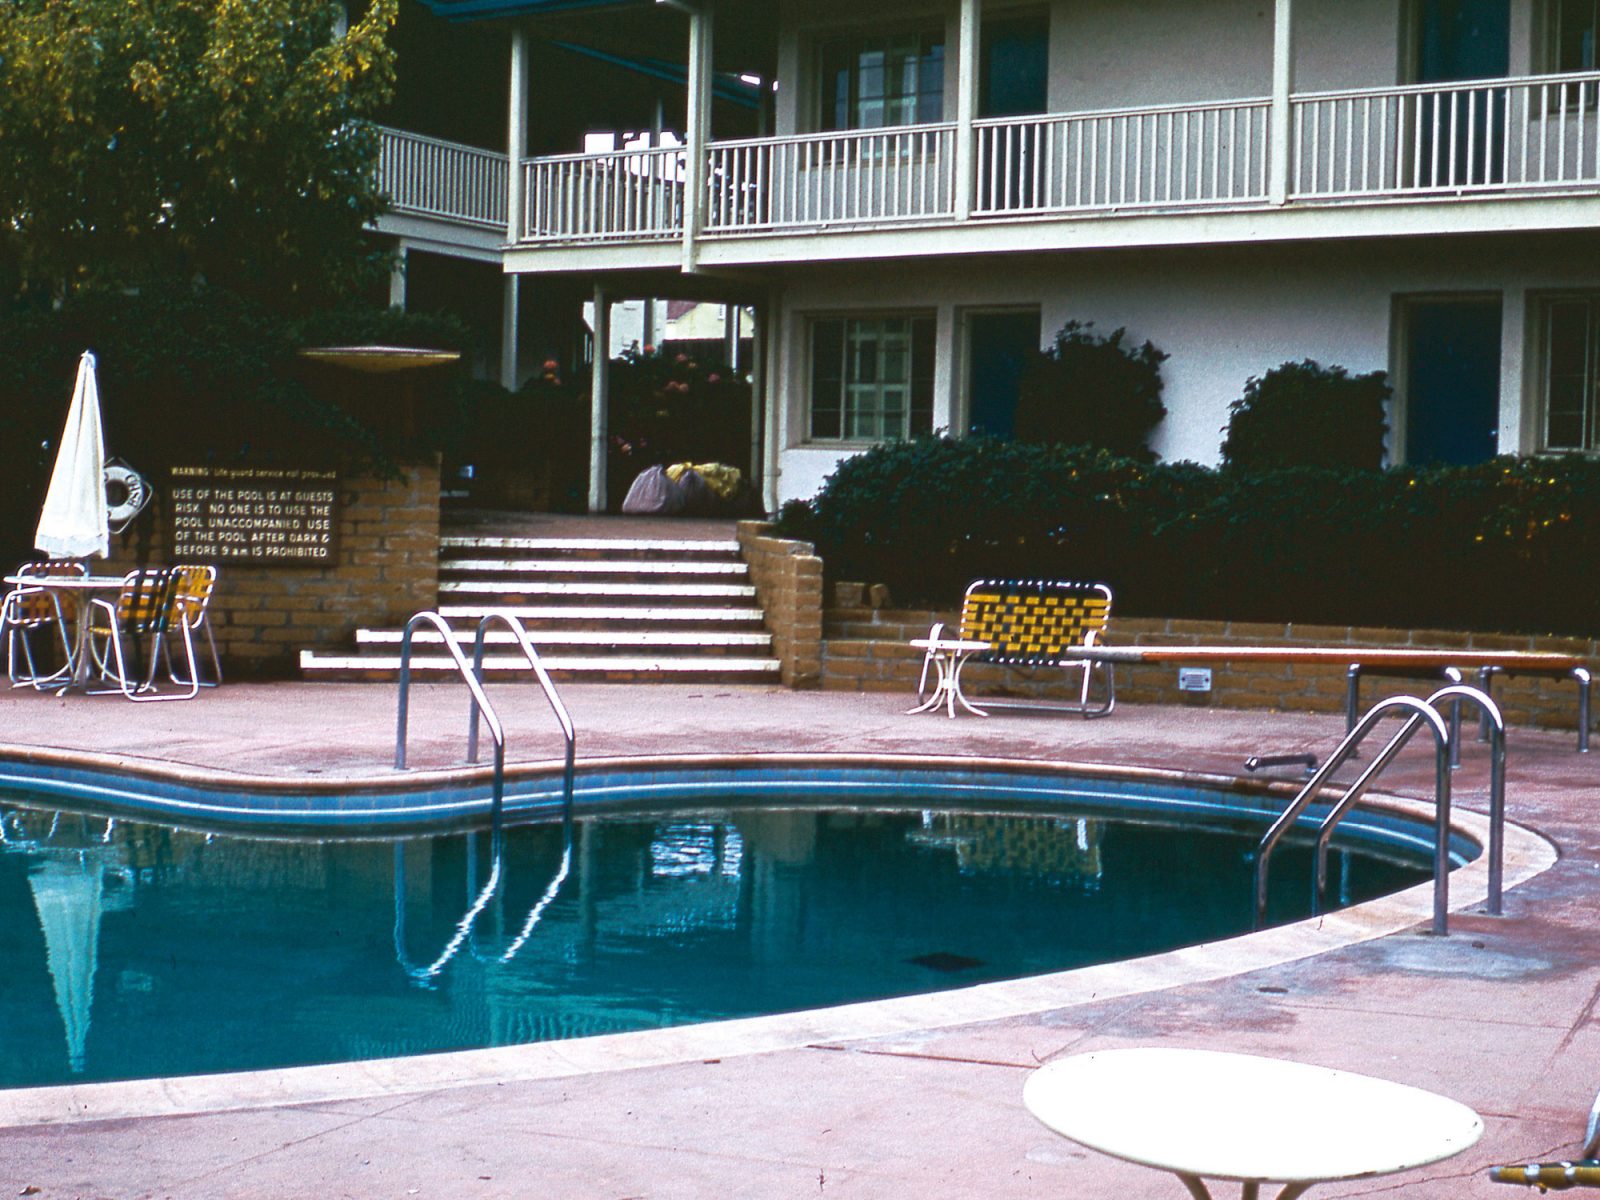 Poolområde med njurformad blå bassäng och solstolar i 1950-talsstil.